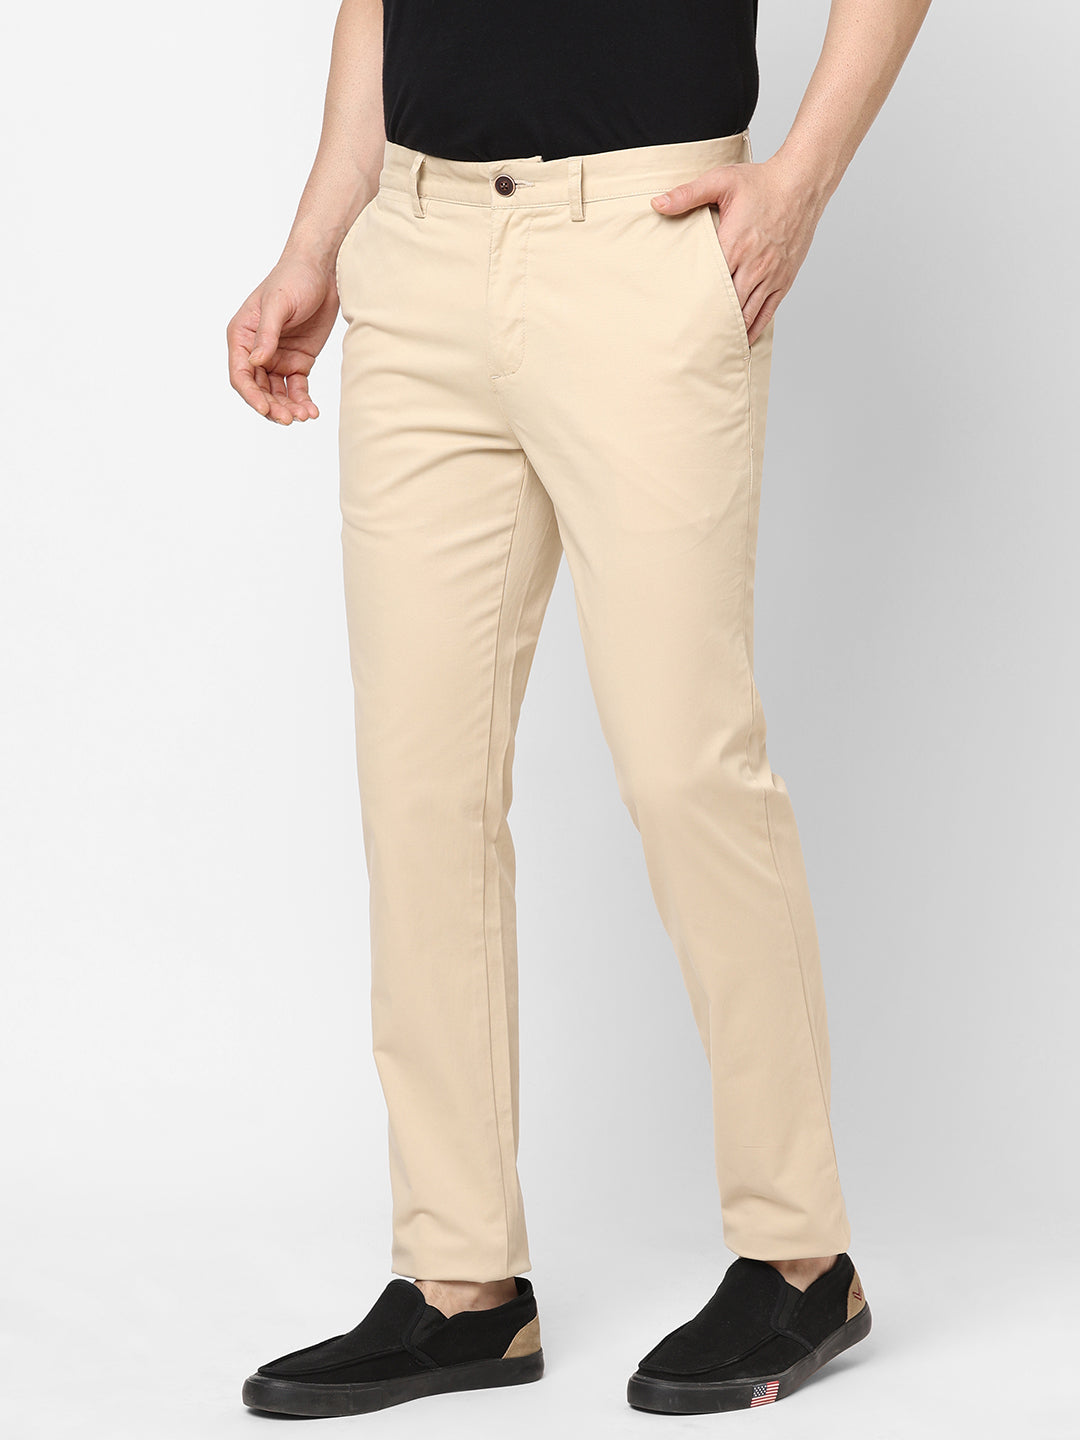 Men's Cotton Lycra Beige Slim Fit Pant